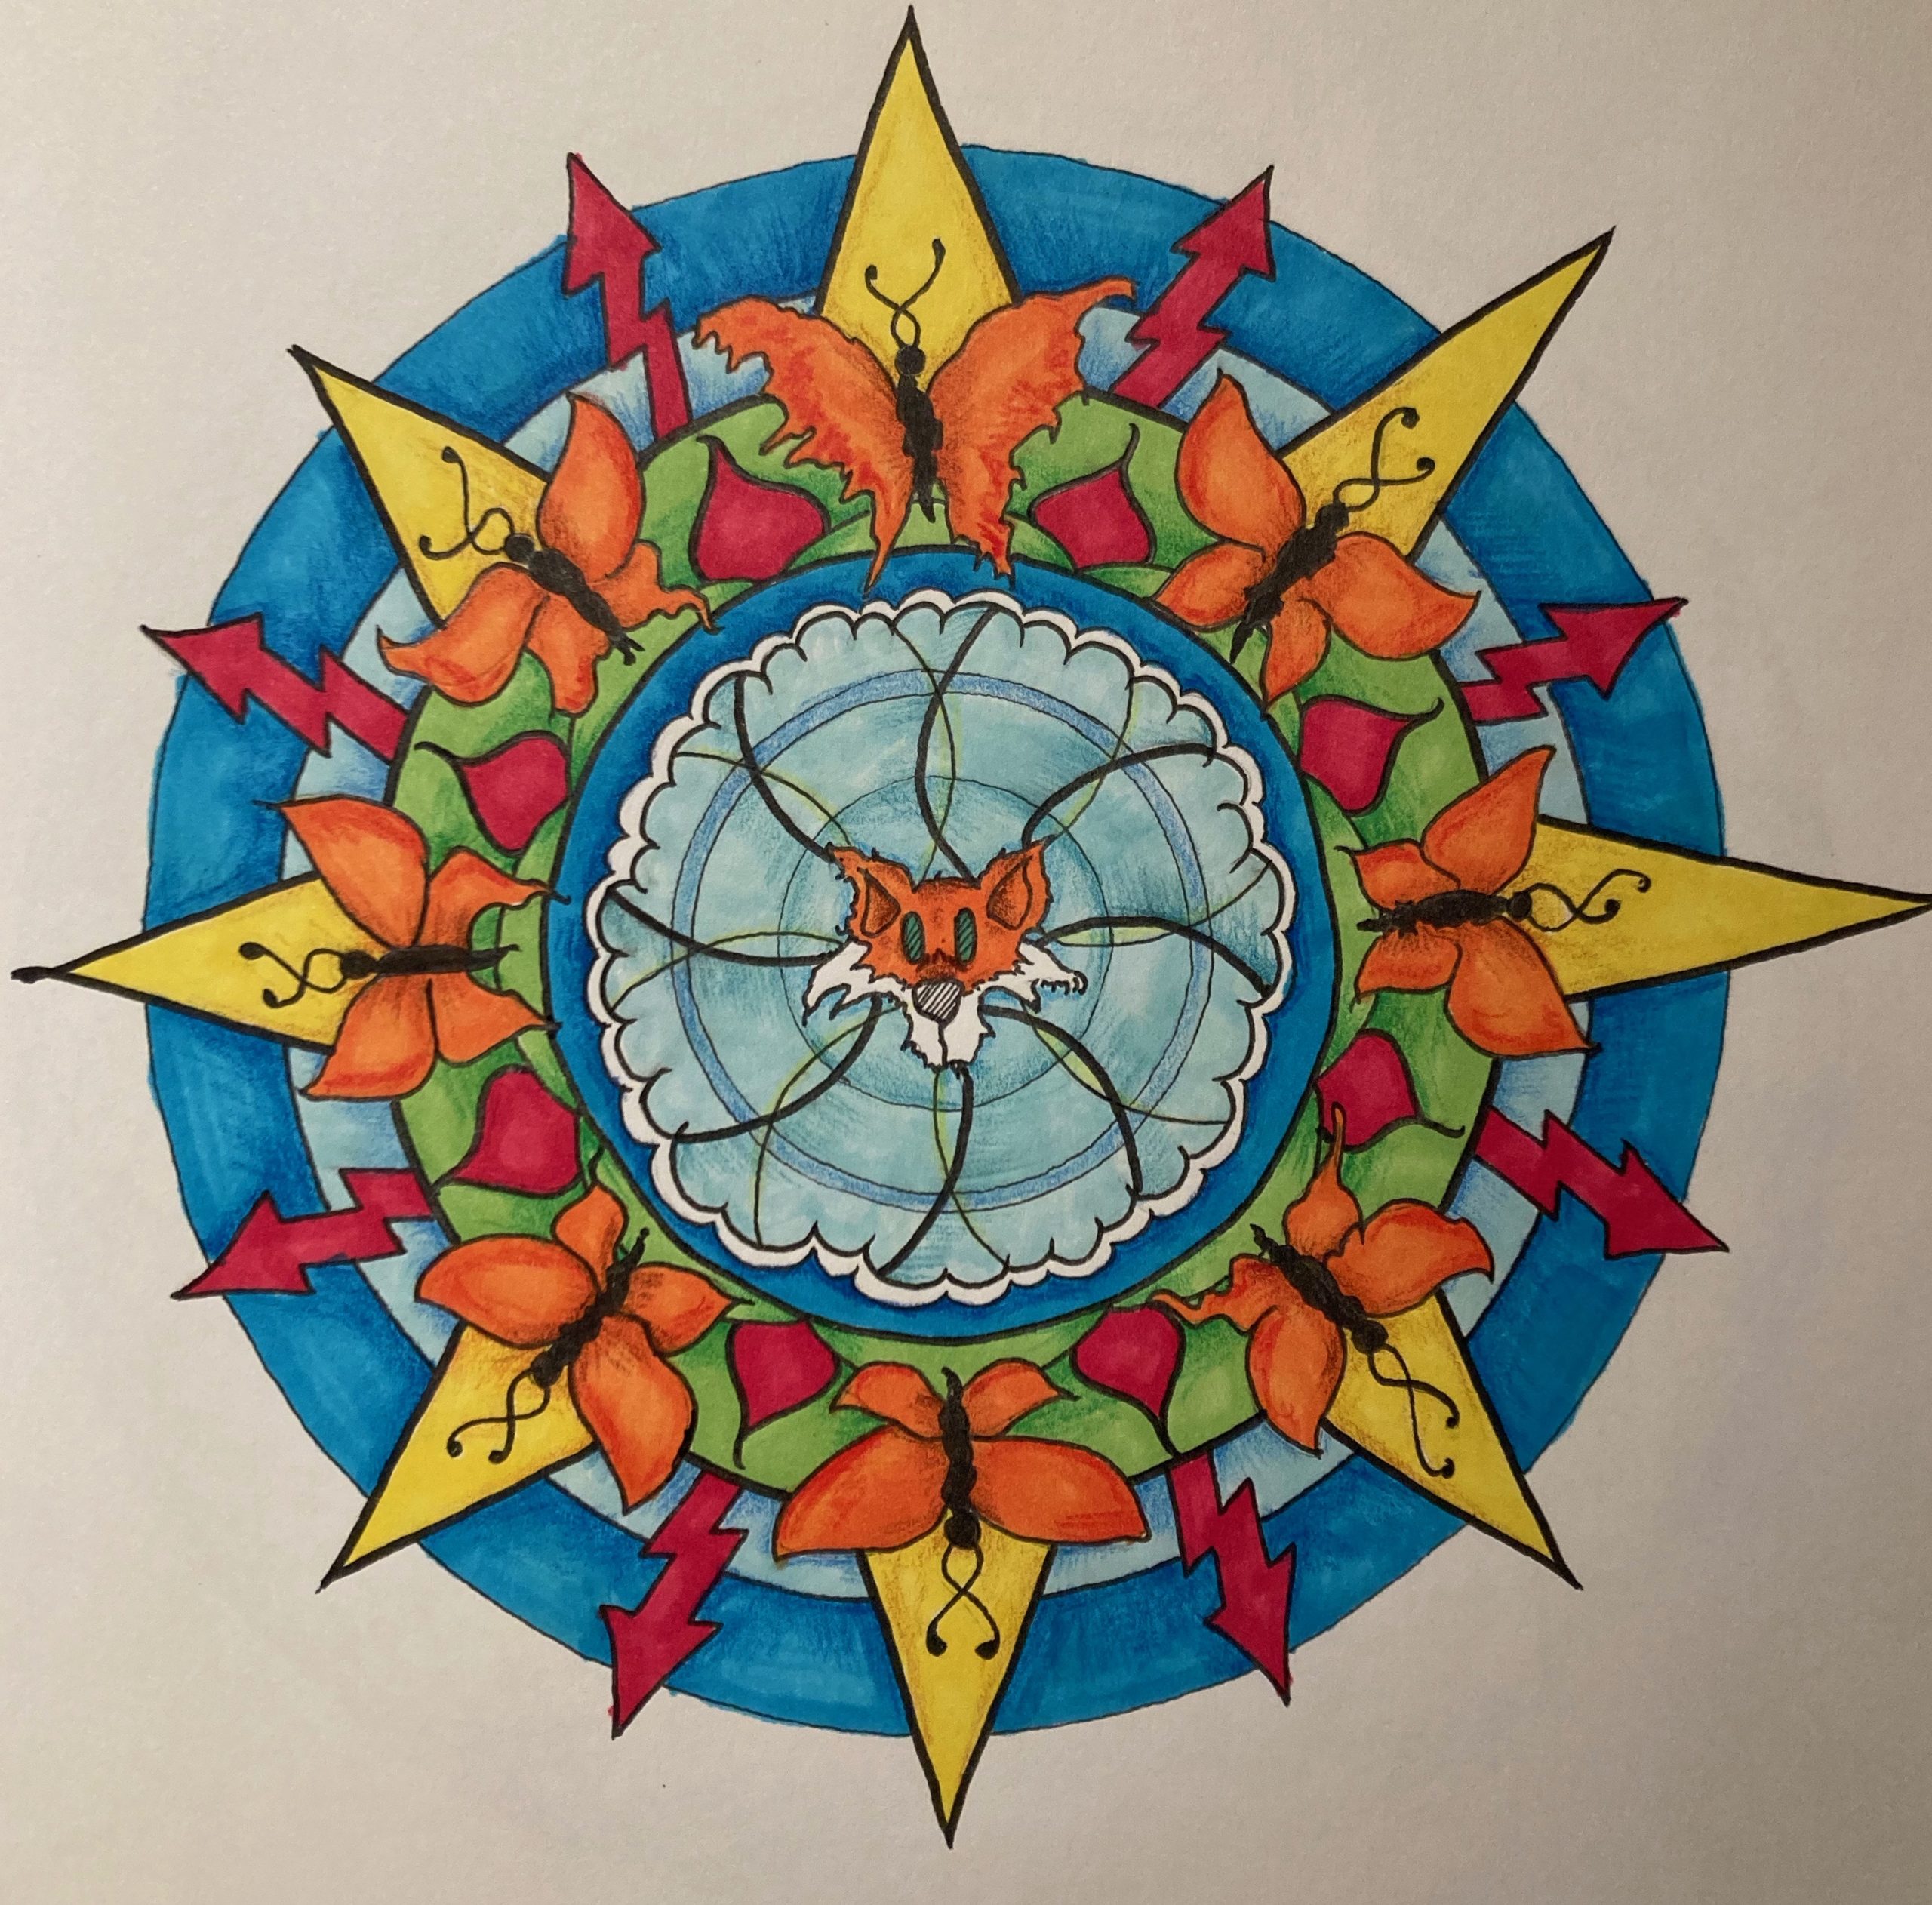 A drawing of the Fox Mandala